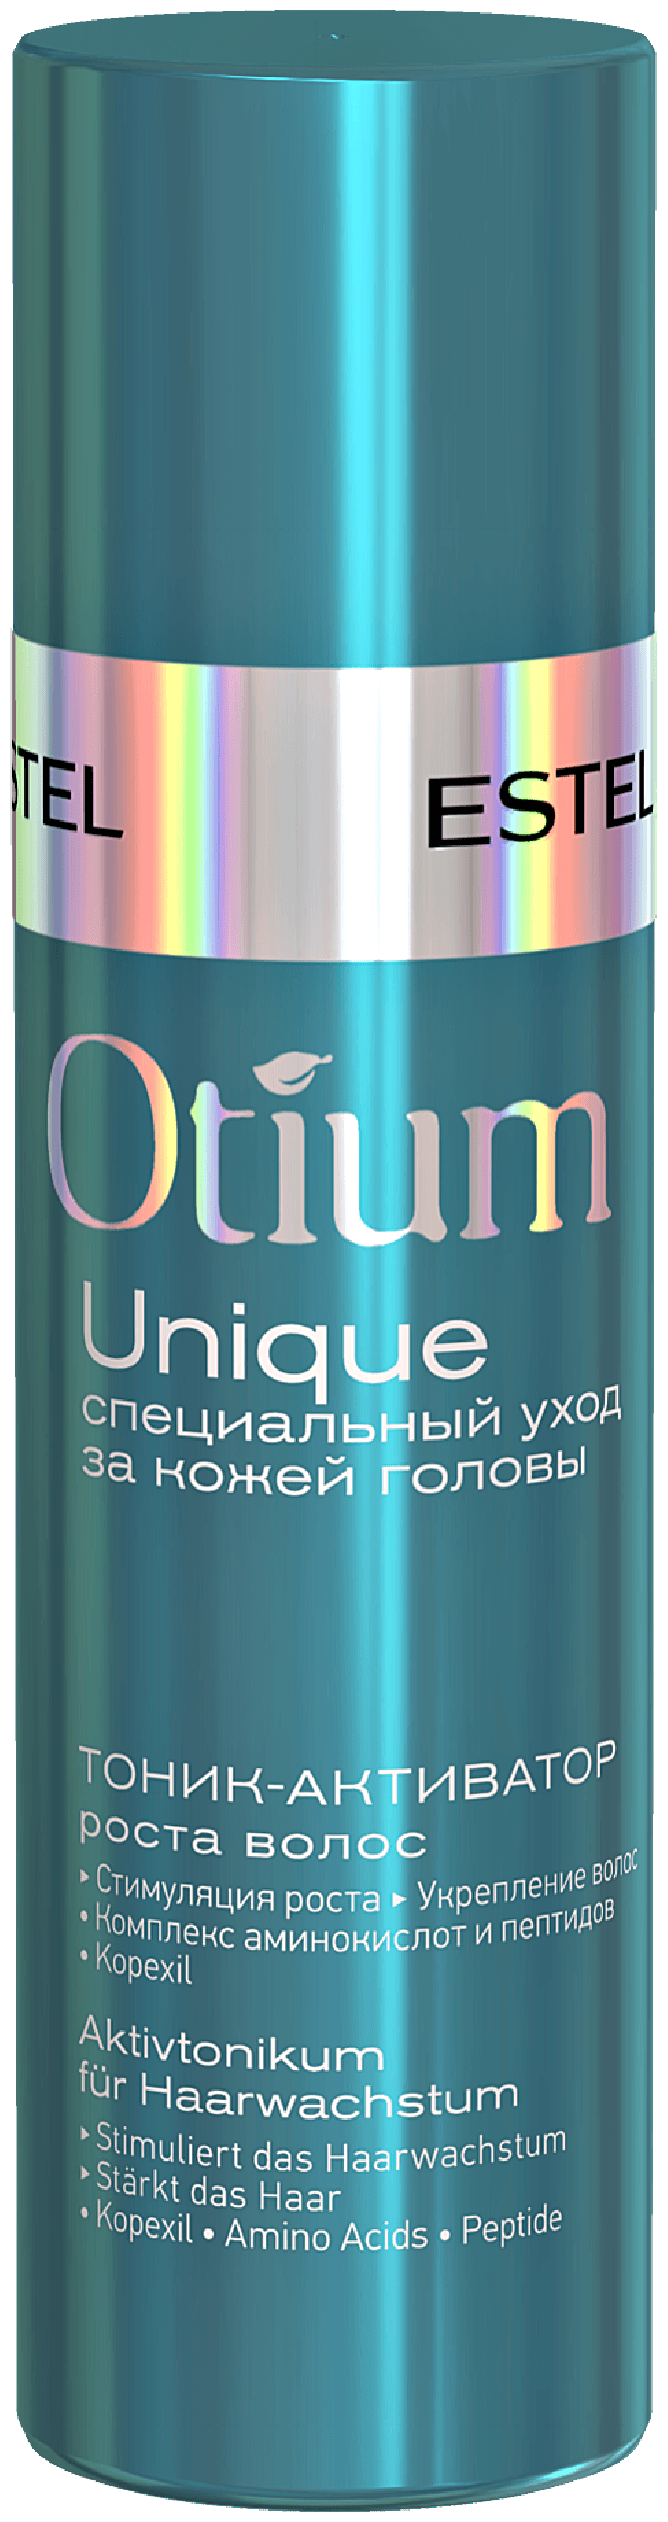 ESTEL OTIUM UNIQUE Тоник-активатор роста волос для кожи головы, 100 мл, бутылка